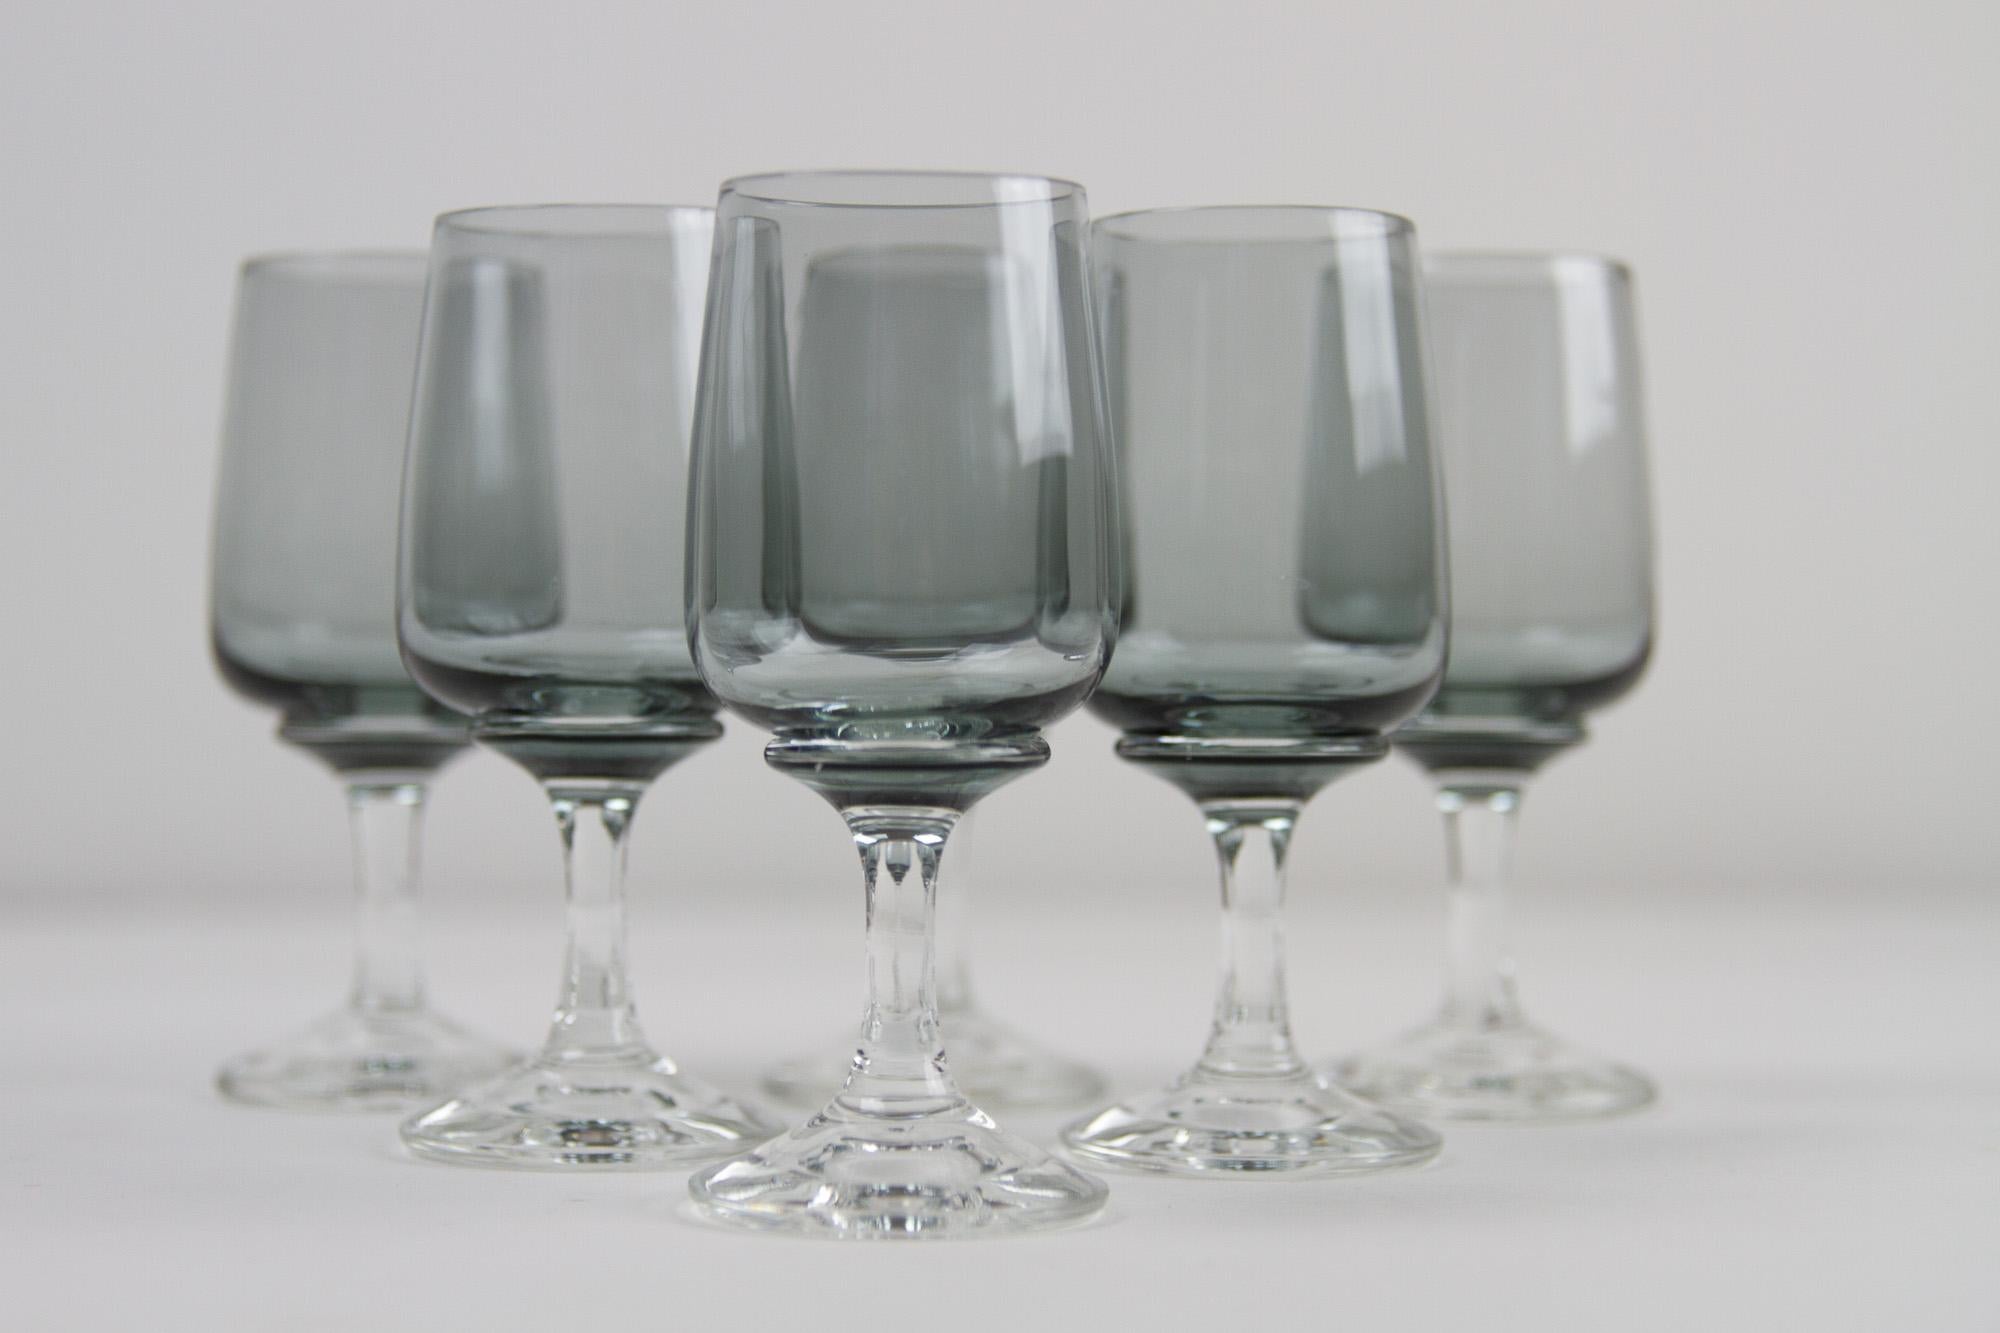 Vintage Danish Holmegaard Atlantic Snaps Glasses, 1960s. Ensemble de 6.
Ensemble de 6 magnifiques verres à boire vintage soufflés à la main de la verrerie danoise Holmegaard, conçus par Per Lütken en 1962. Ils n'ont été fabriqués qu'entre 1962 et